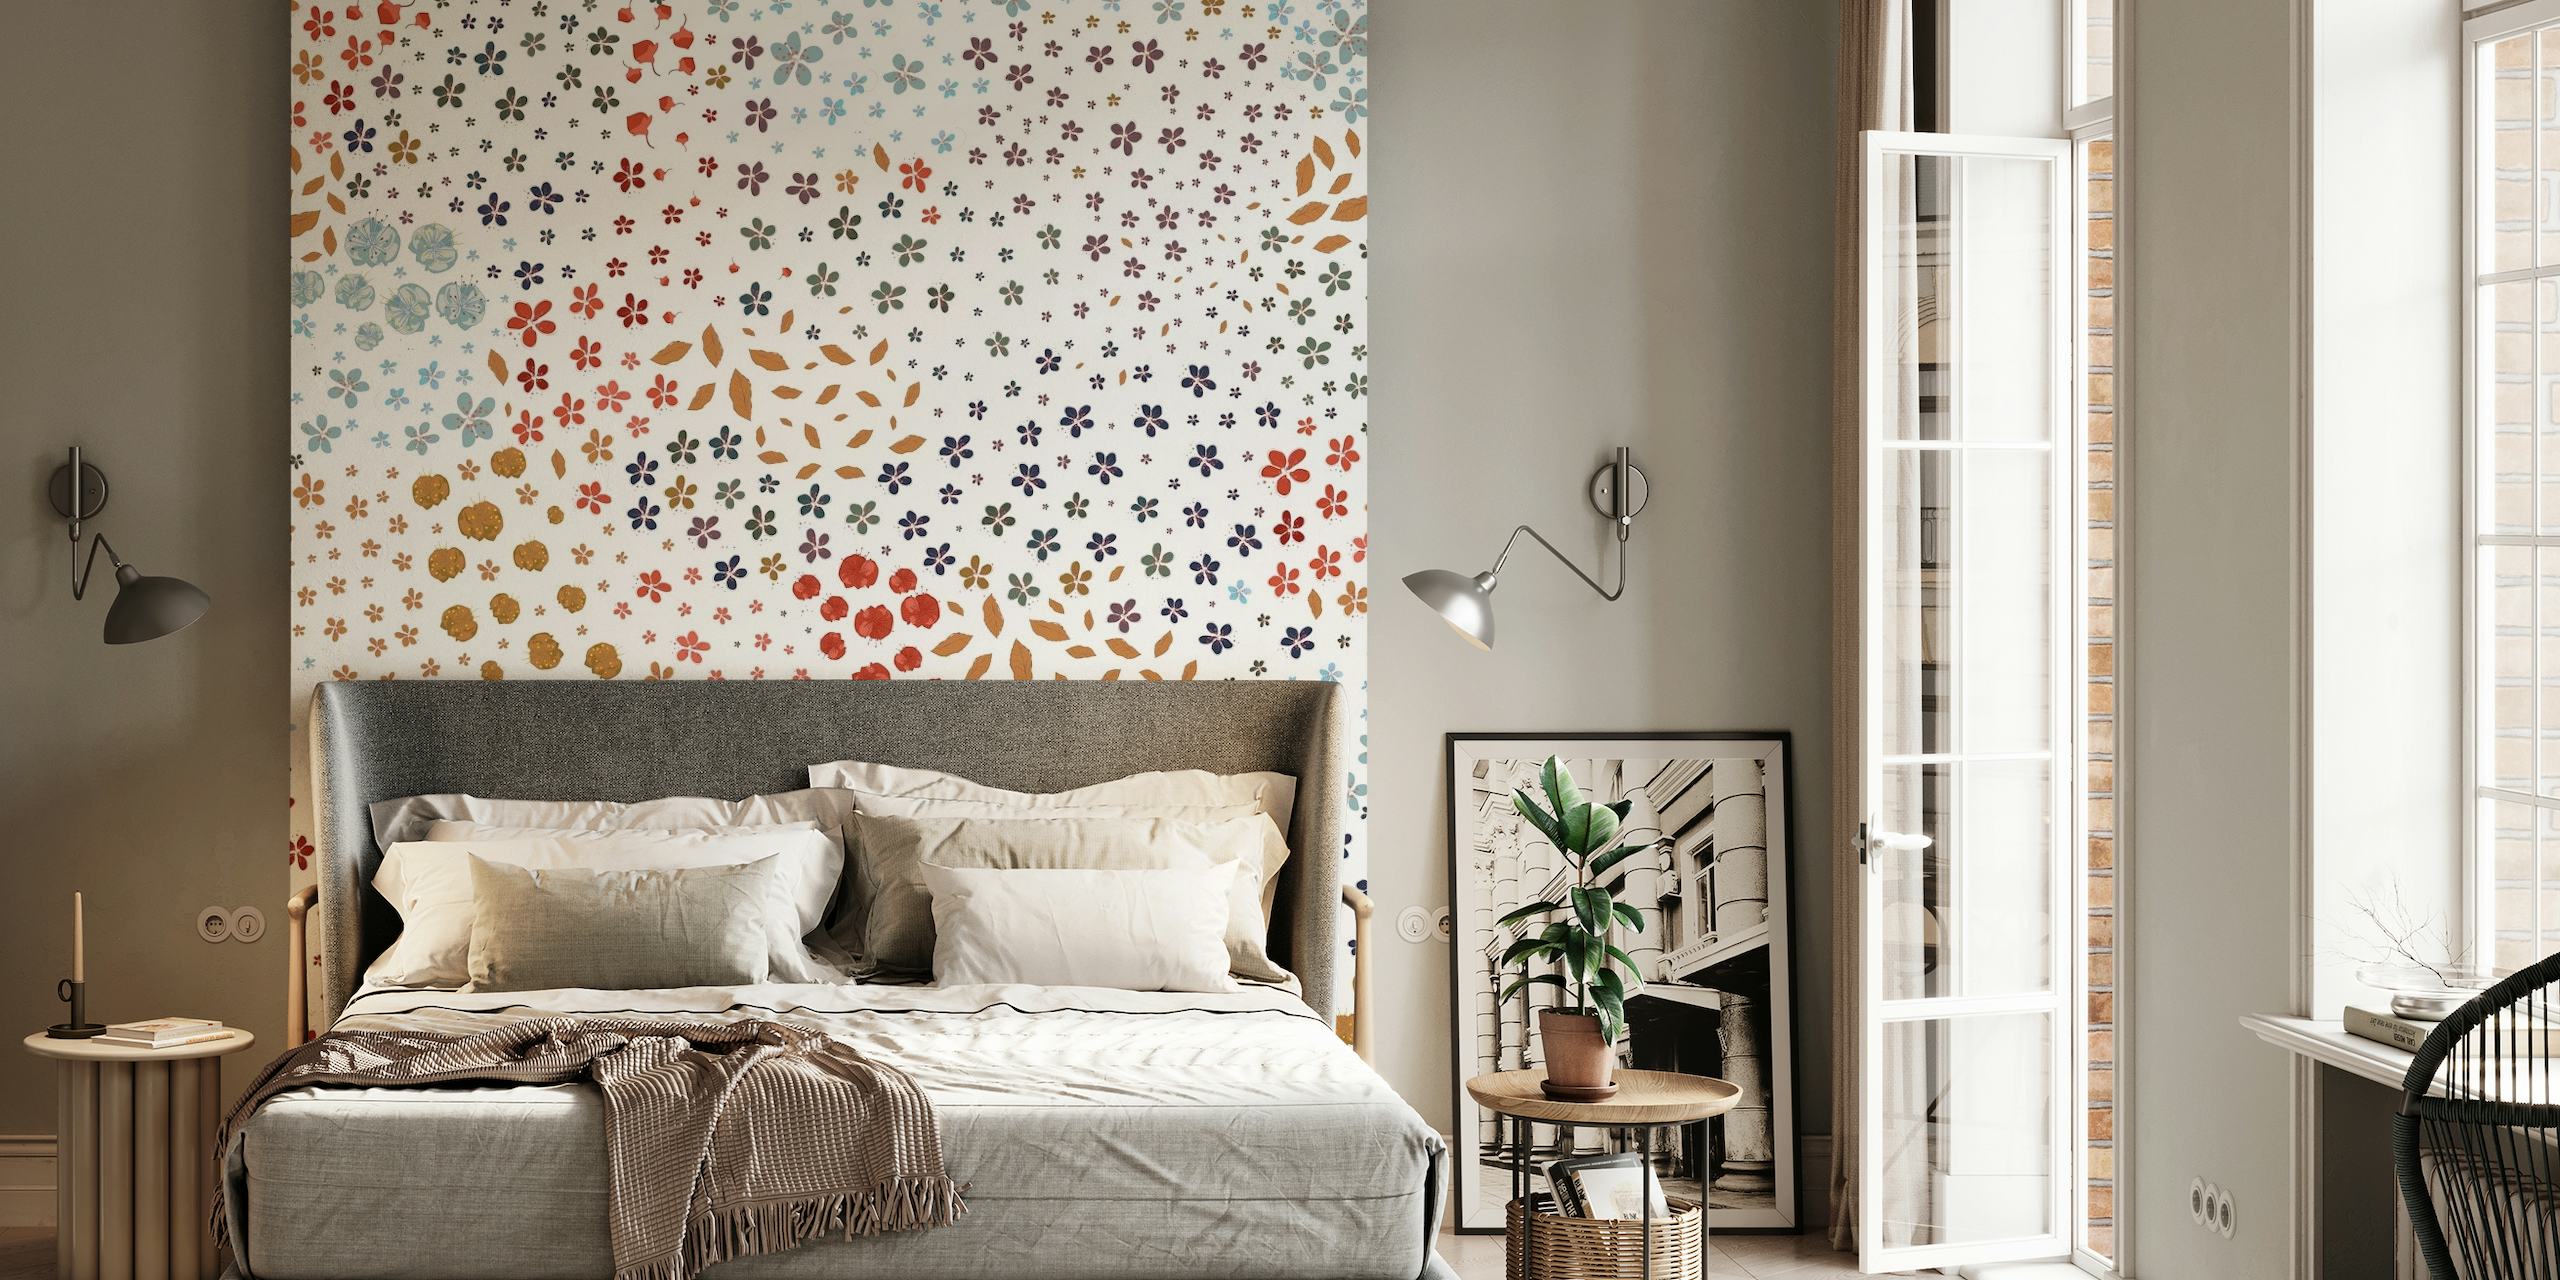 Farbenfrohes und aufwendiges Wandbild mit Frühlingsmotiven, floralen und geometrischen Mustern